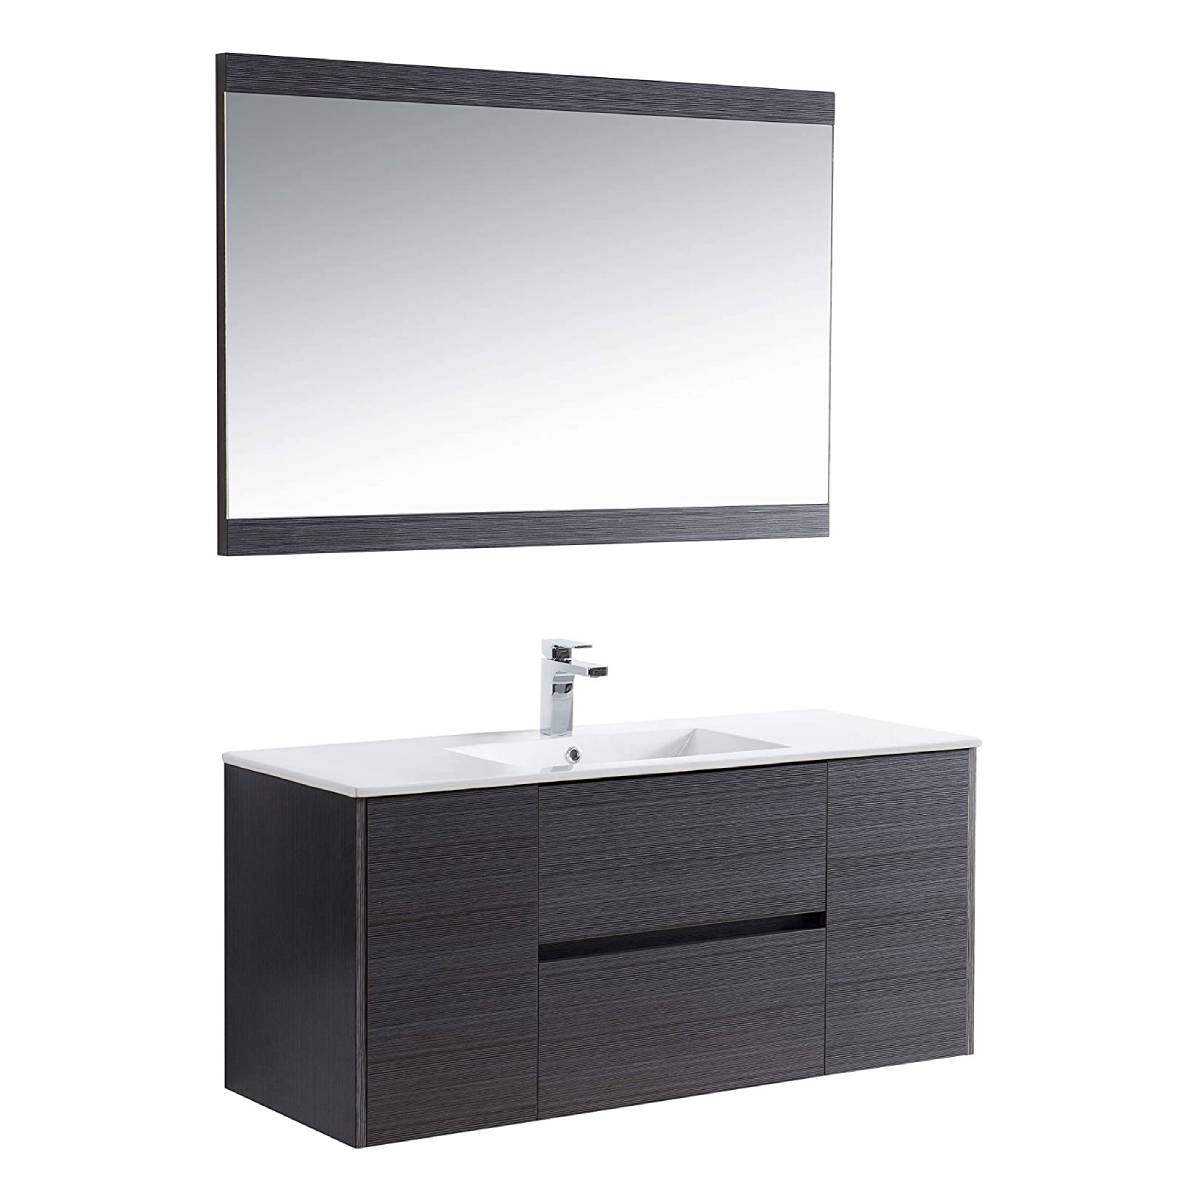 Valencia - 48 Inch Single Vanity with Ceramic Sink & Mirror - Silver Grey - Molaix842708123793Valencia016 48 16S C M